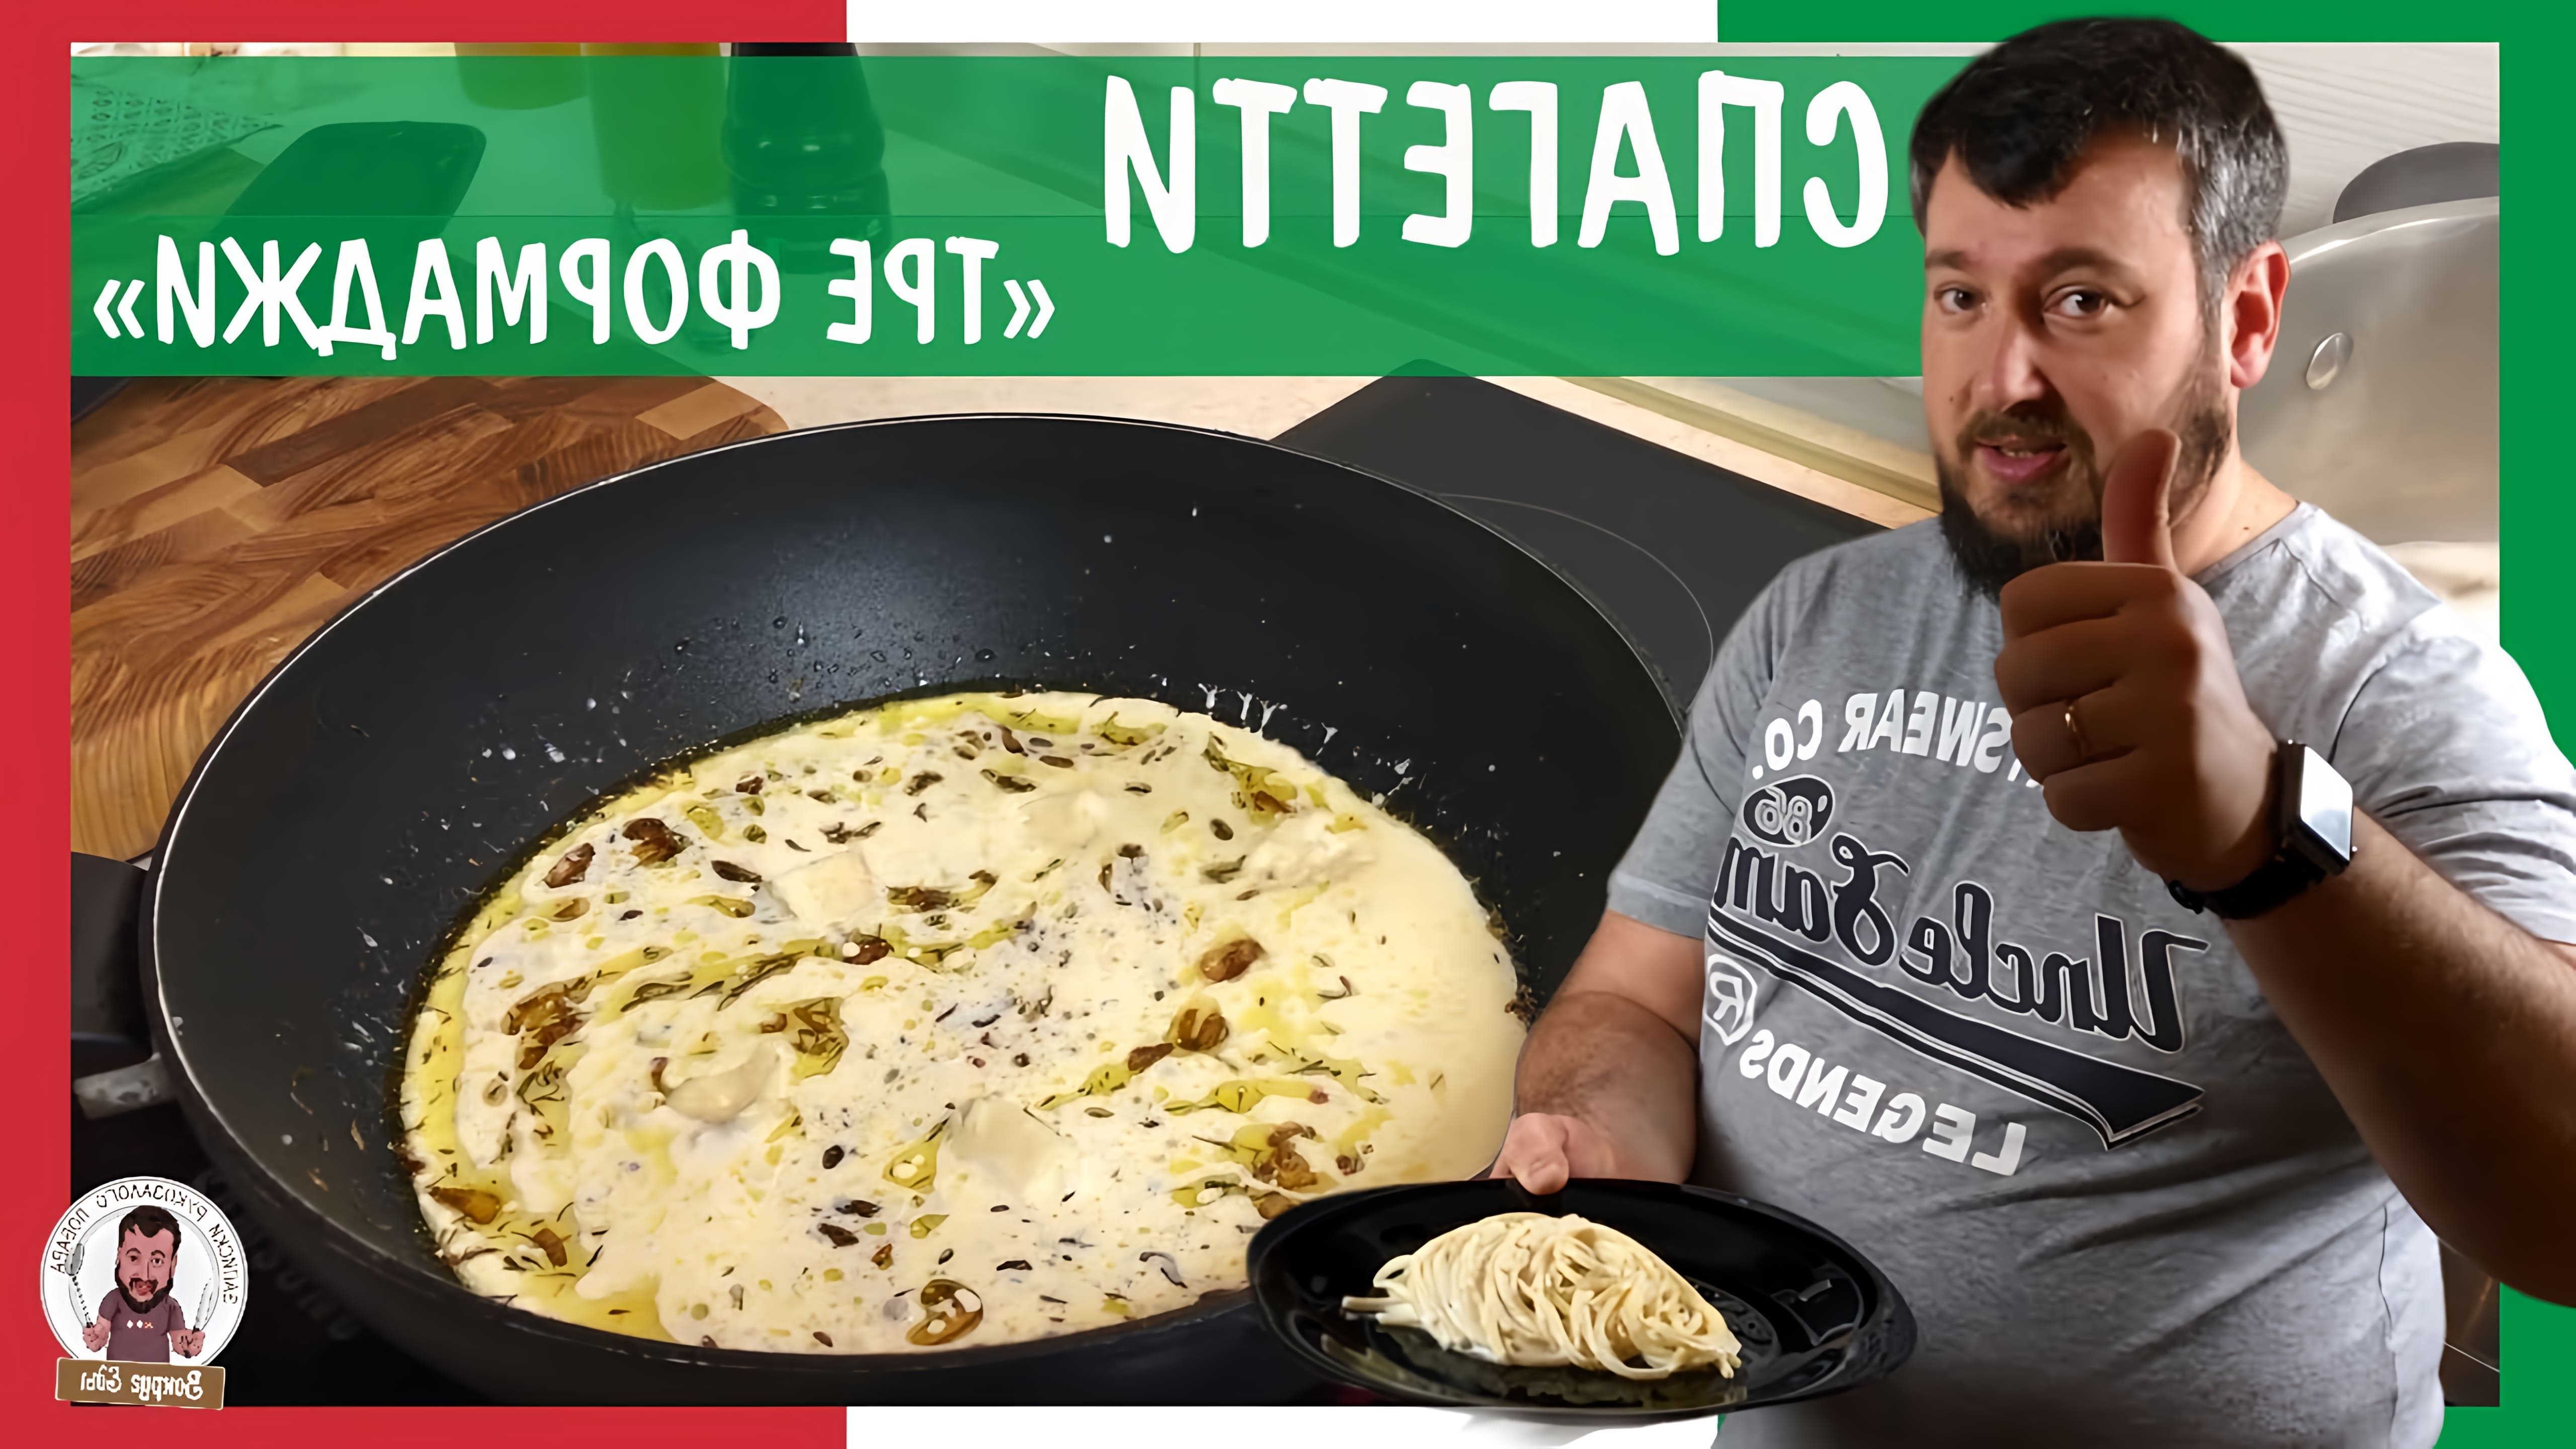 В этом видео демонстрируется рецепт приготовления итальянского блюда - спагетти с сырным соусом